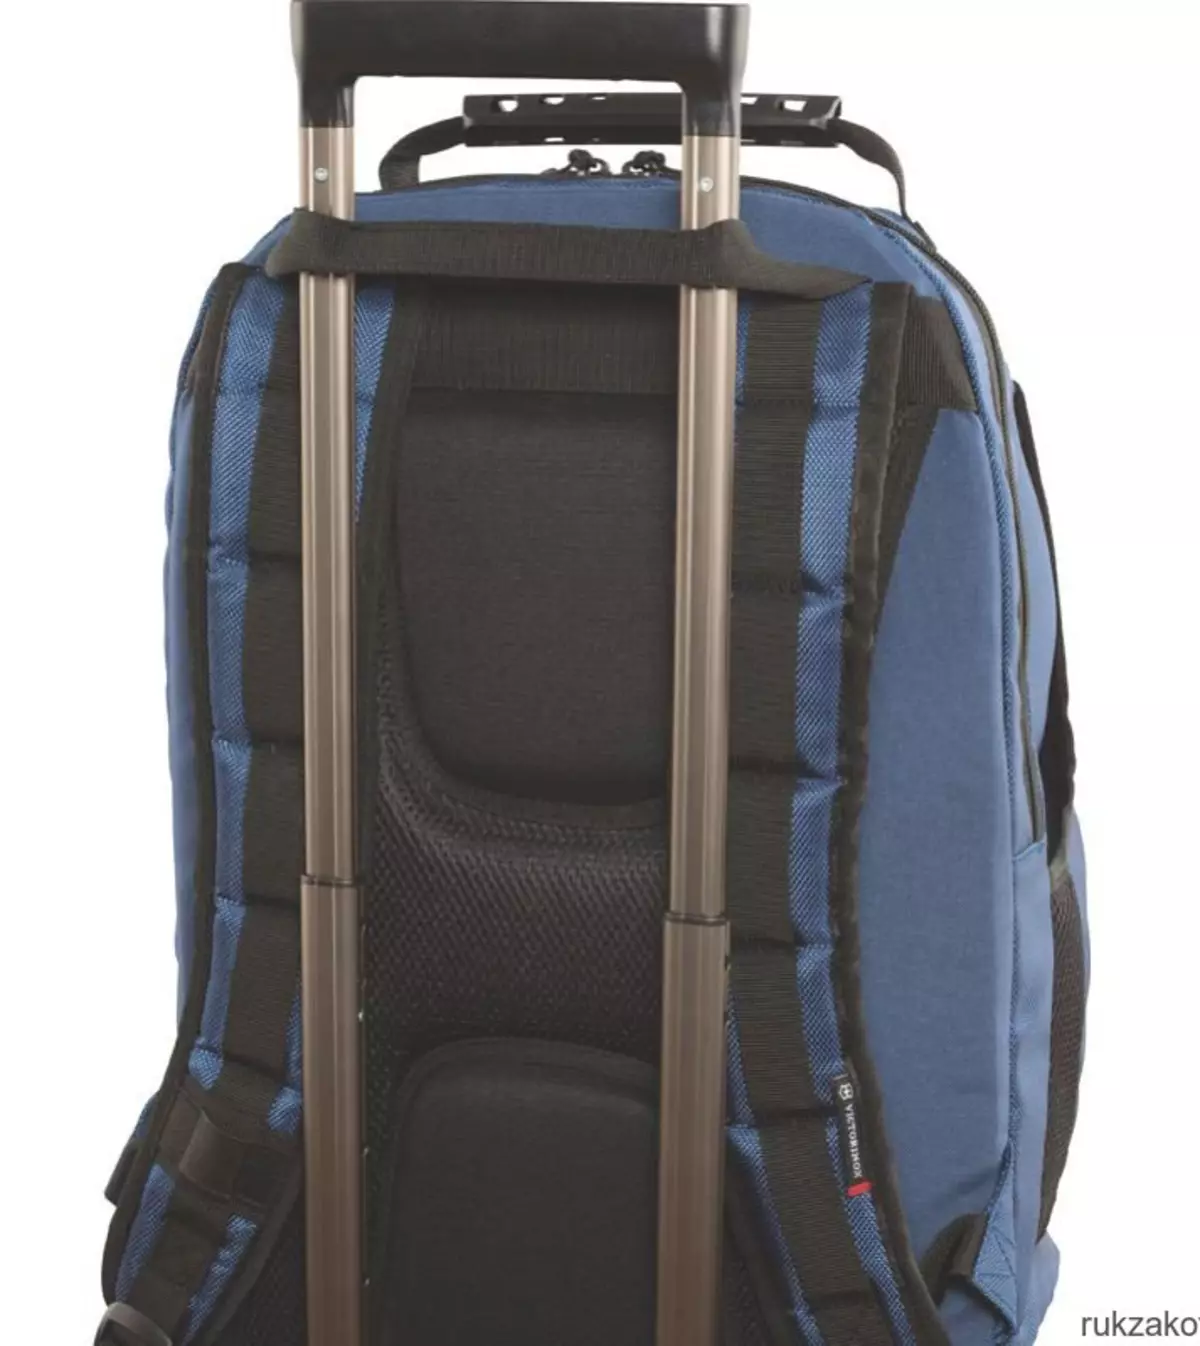 Backpacks Backpacks LackSks: Моделҳо бо як тасмаи китфи, қатор намунаҳо. Чӣ тавр фарқ карданро фарқ кардан мумкин аст? Шарҳҳо 23660_15